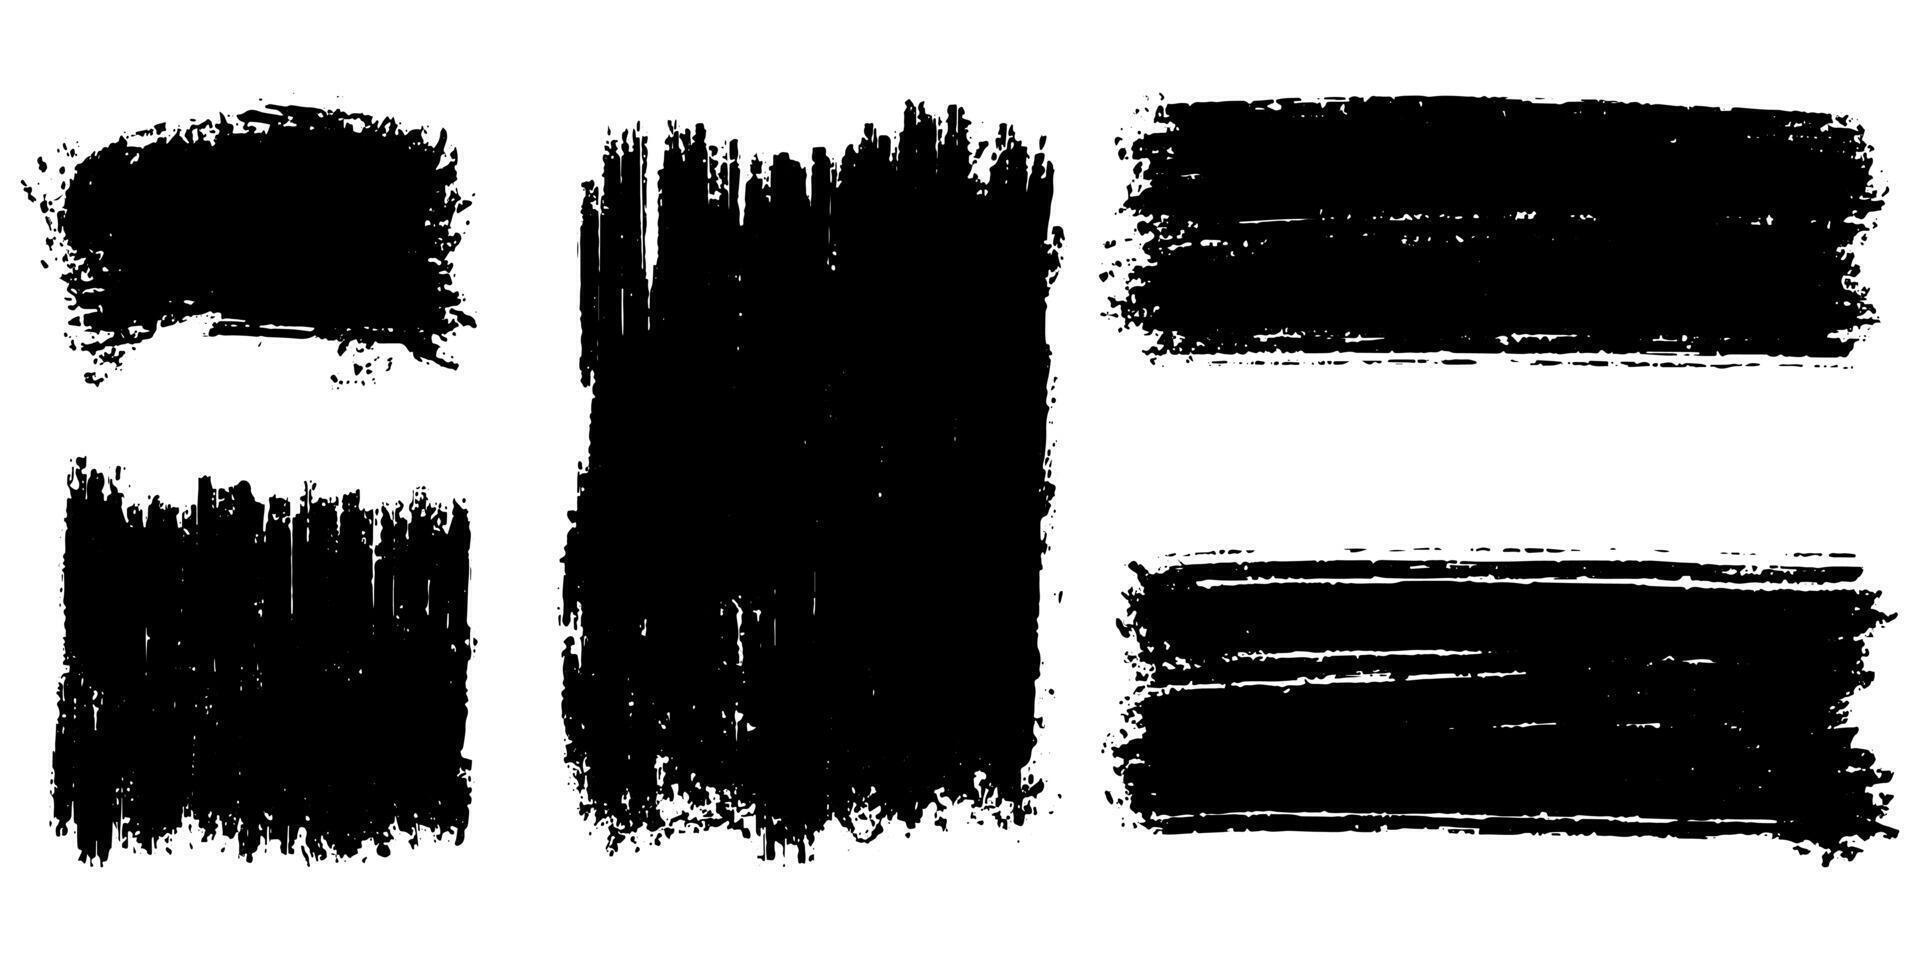 conjunto de pinceladas de tinta, pincéis, linhas, tinta preta, suja. elemento gráfico desenhado à mão isolado no fundo branco. ilustração vetorial. vetor